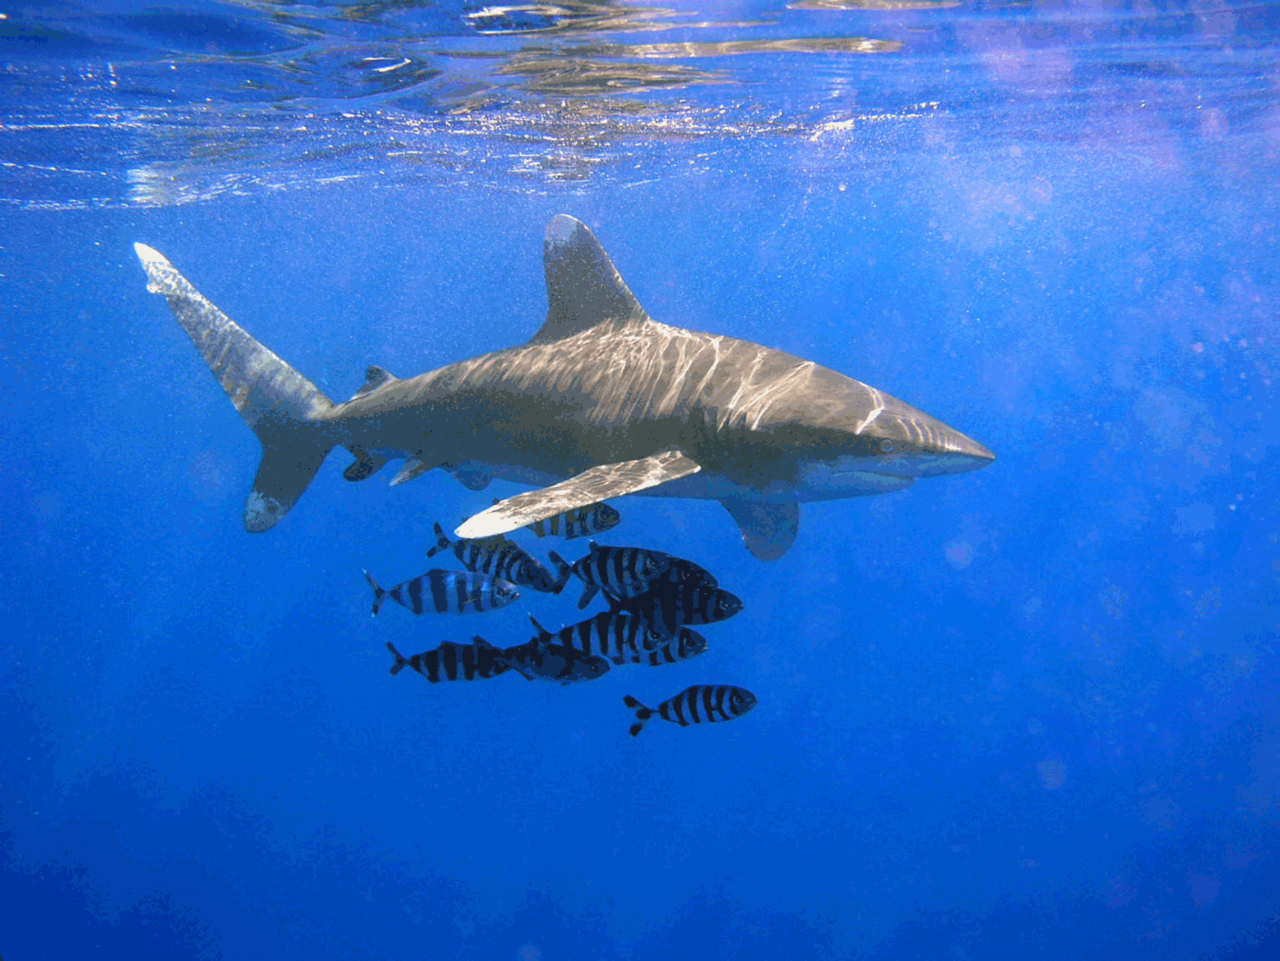 Le requin longimane, parata en tahitien, est responsable de cette attaque contre une touriste au large de Moorea.